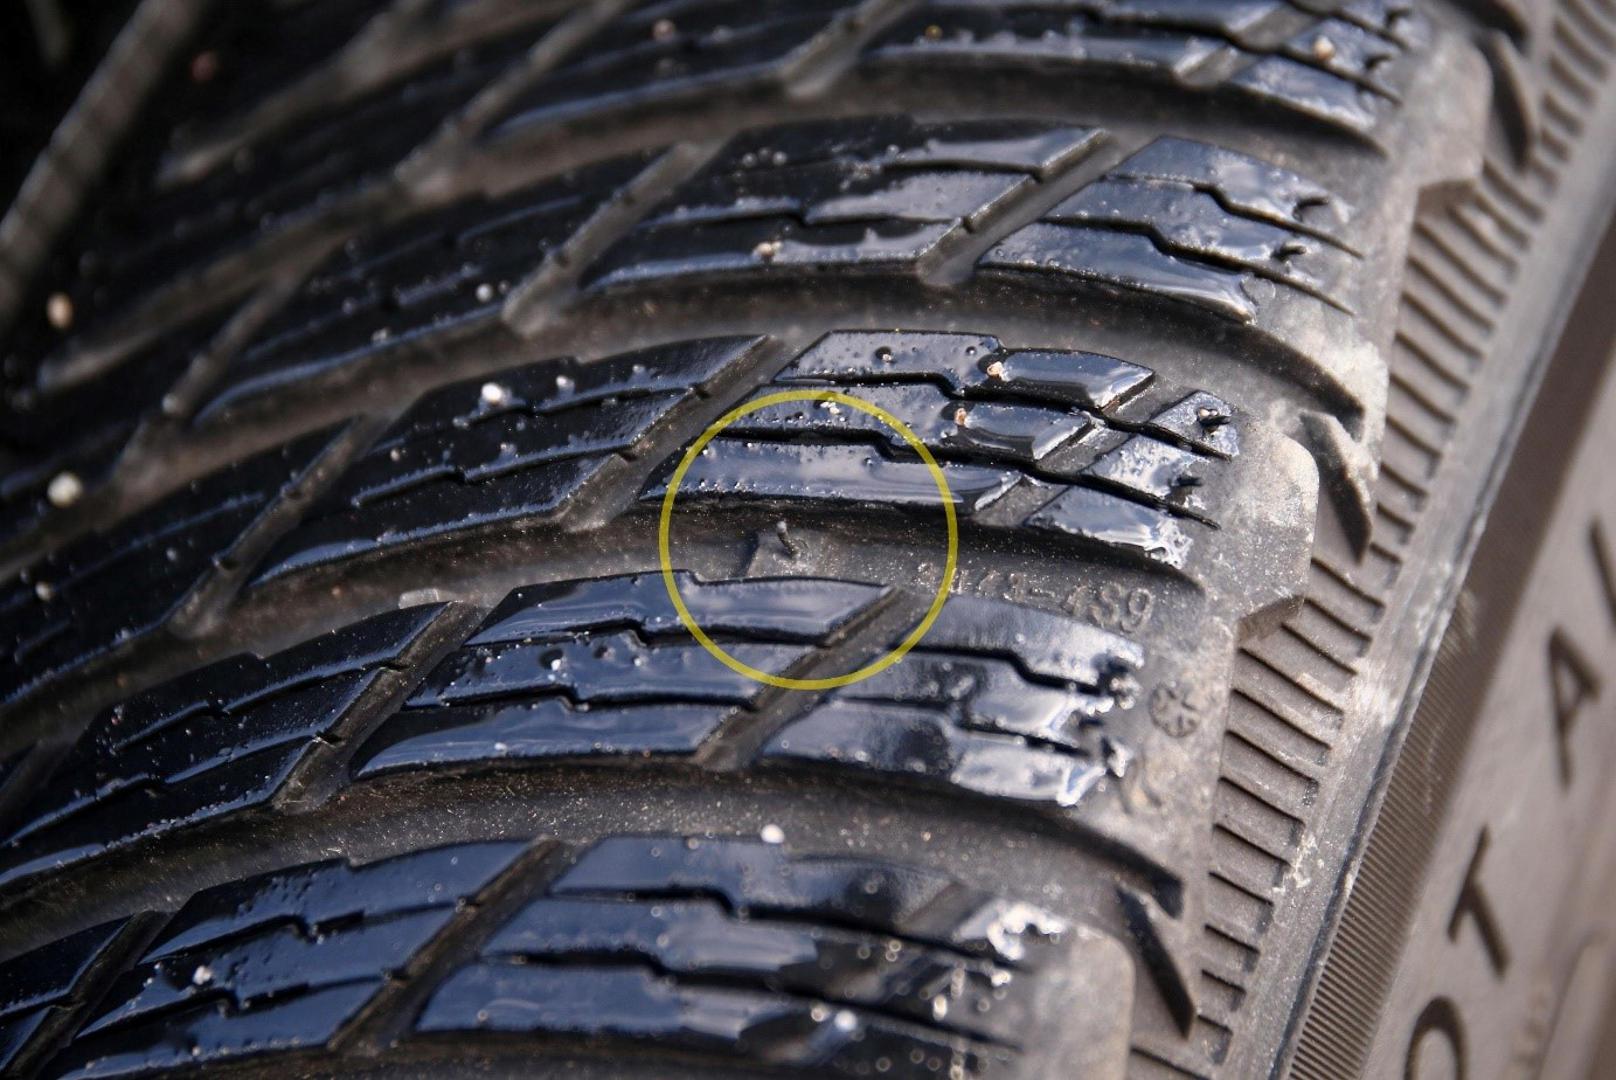 Ako je pneumatik potrošen do indikatora utrošenosti, on se mora zamijeniti